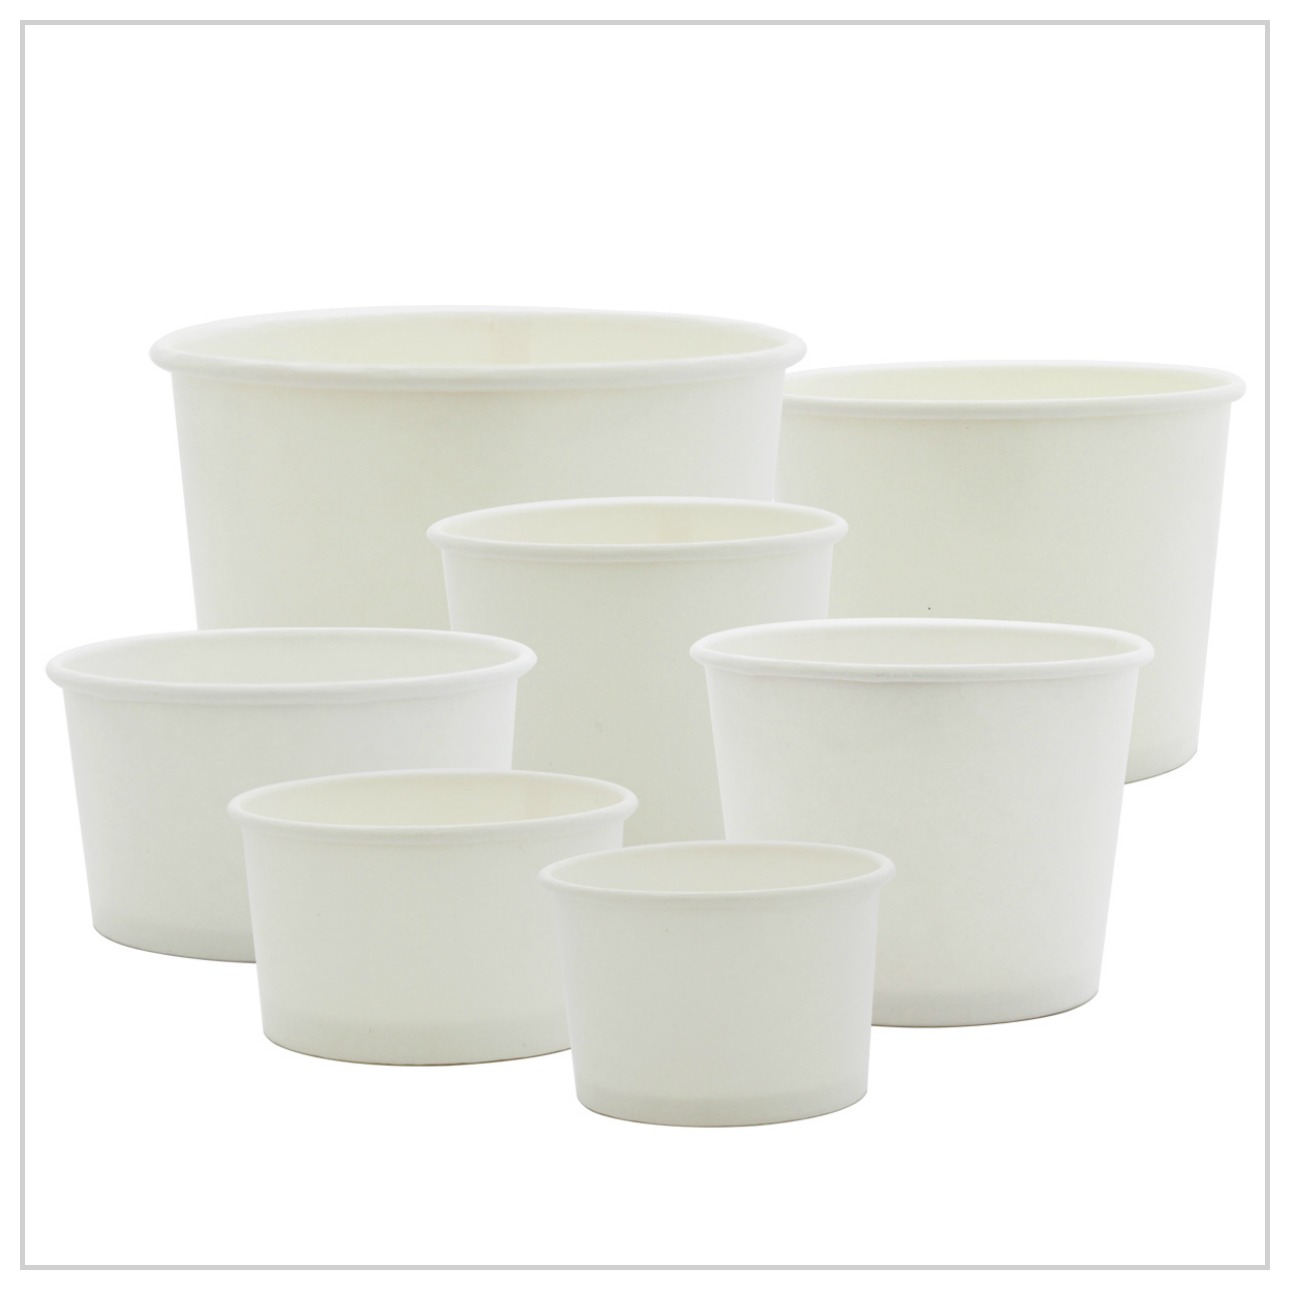 Gobelets jetables blanc compostables pour boissons chaudes de 360 ml